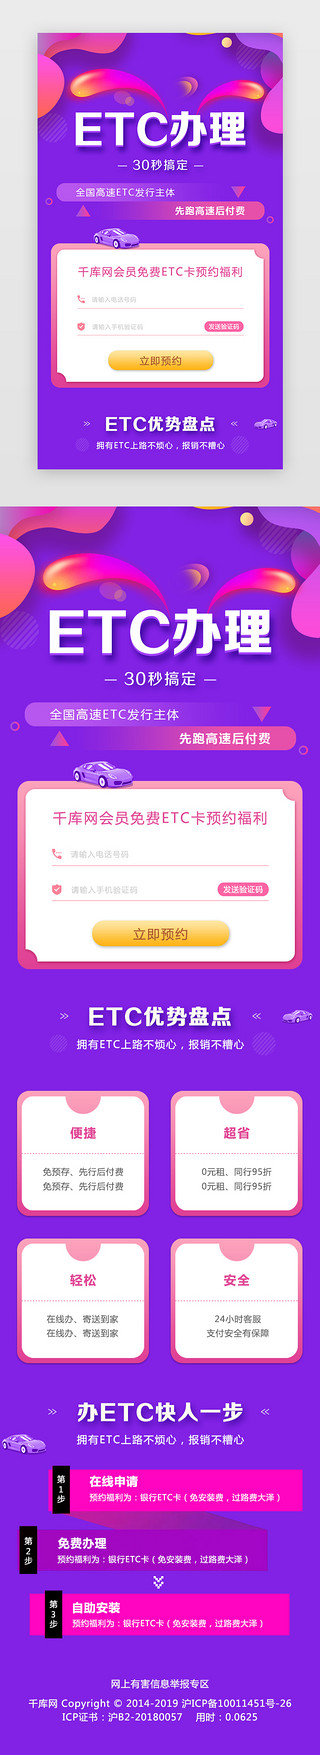 汽车UI设计素材_紫色卡通ETC汽车H5页面